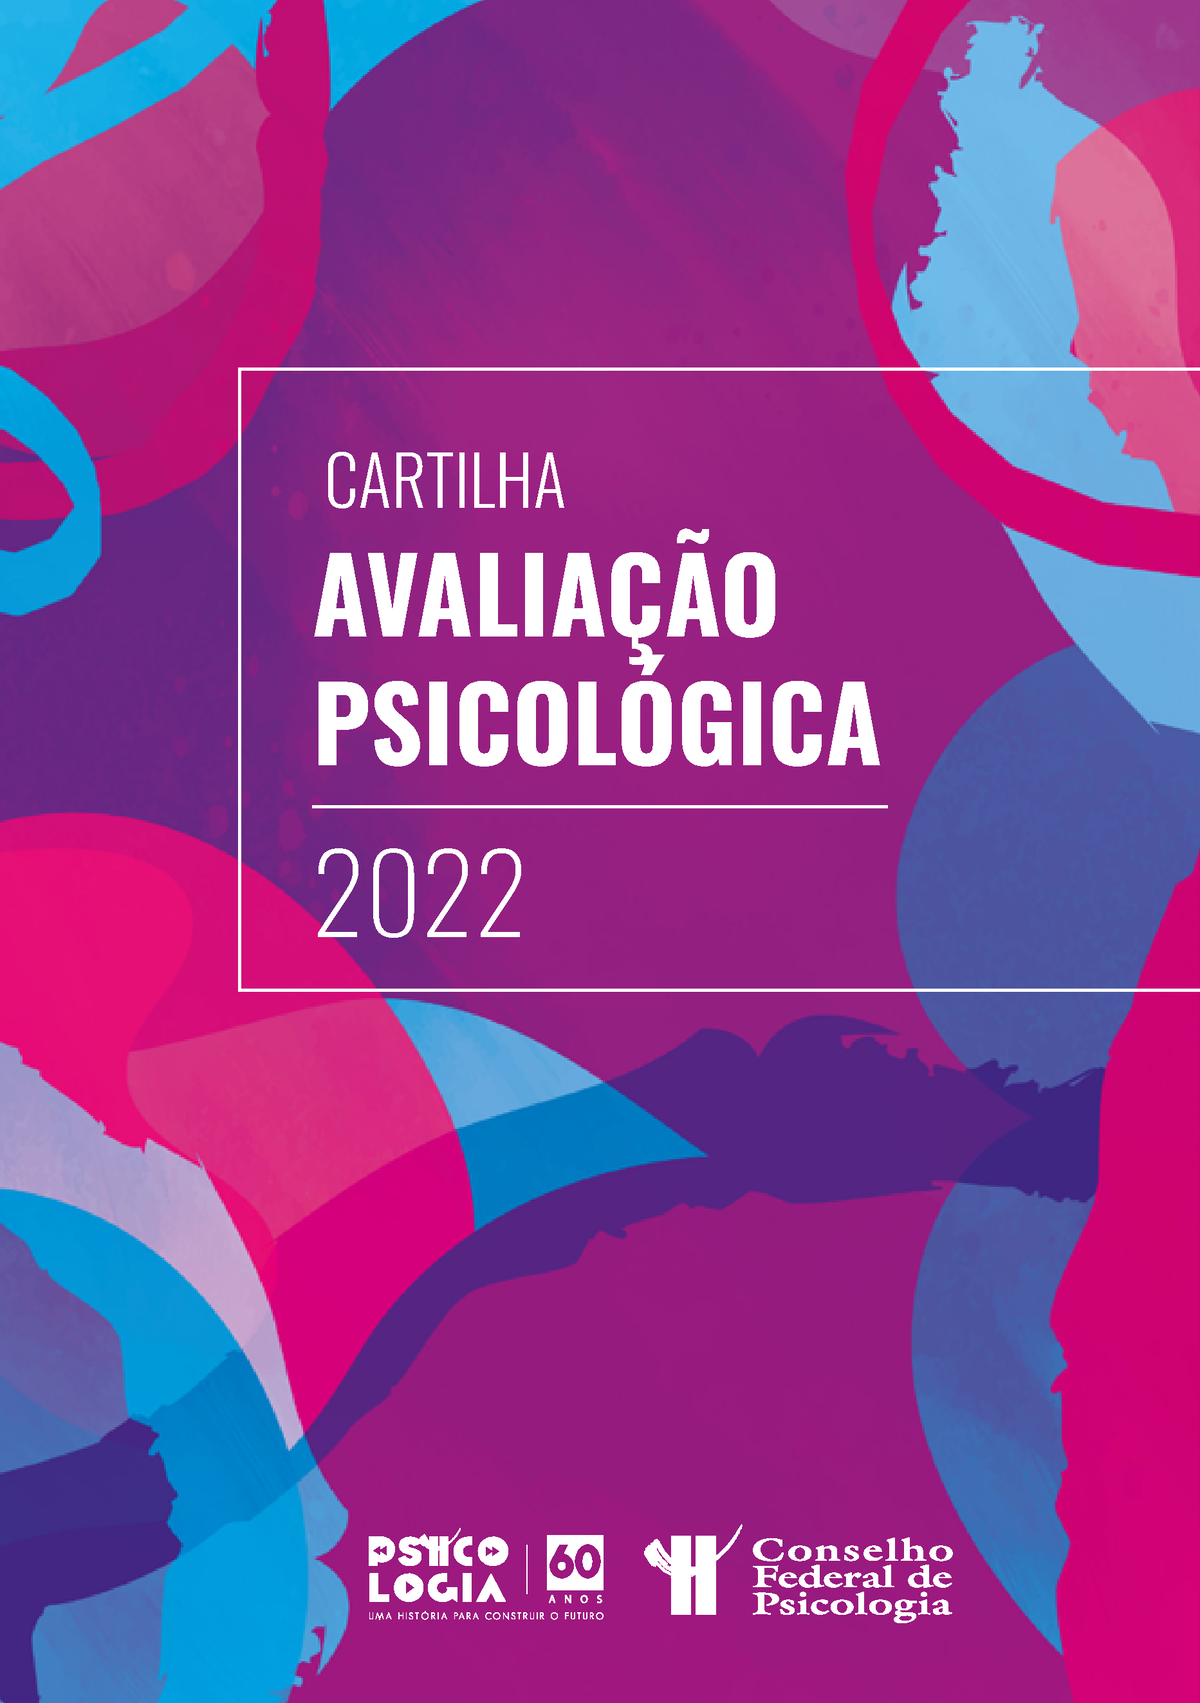 Cartilha Avaliacao Psicologica 2309 AvaliaÇÃo PsicolÓgica 2022 2460